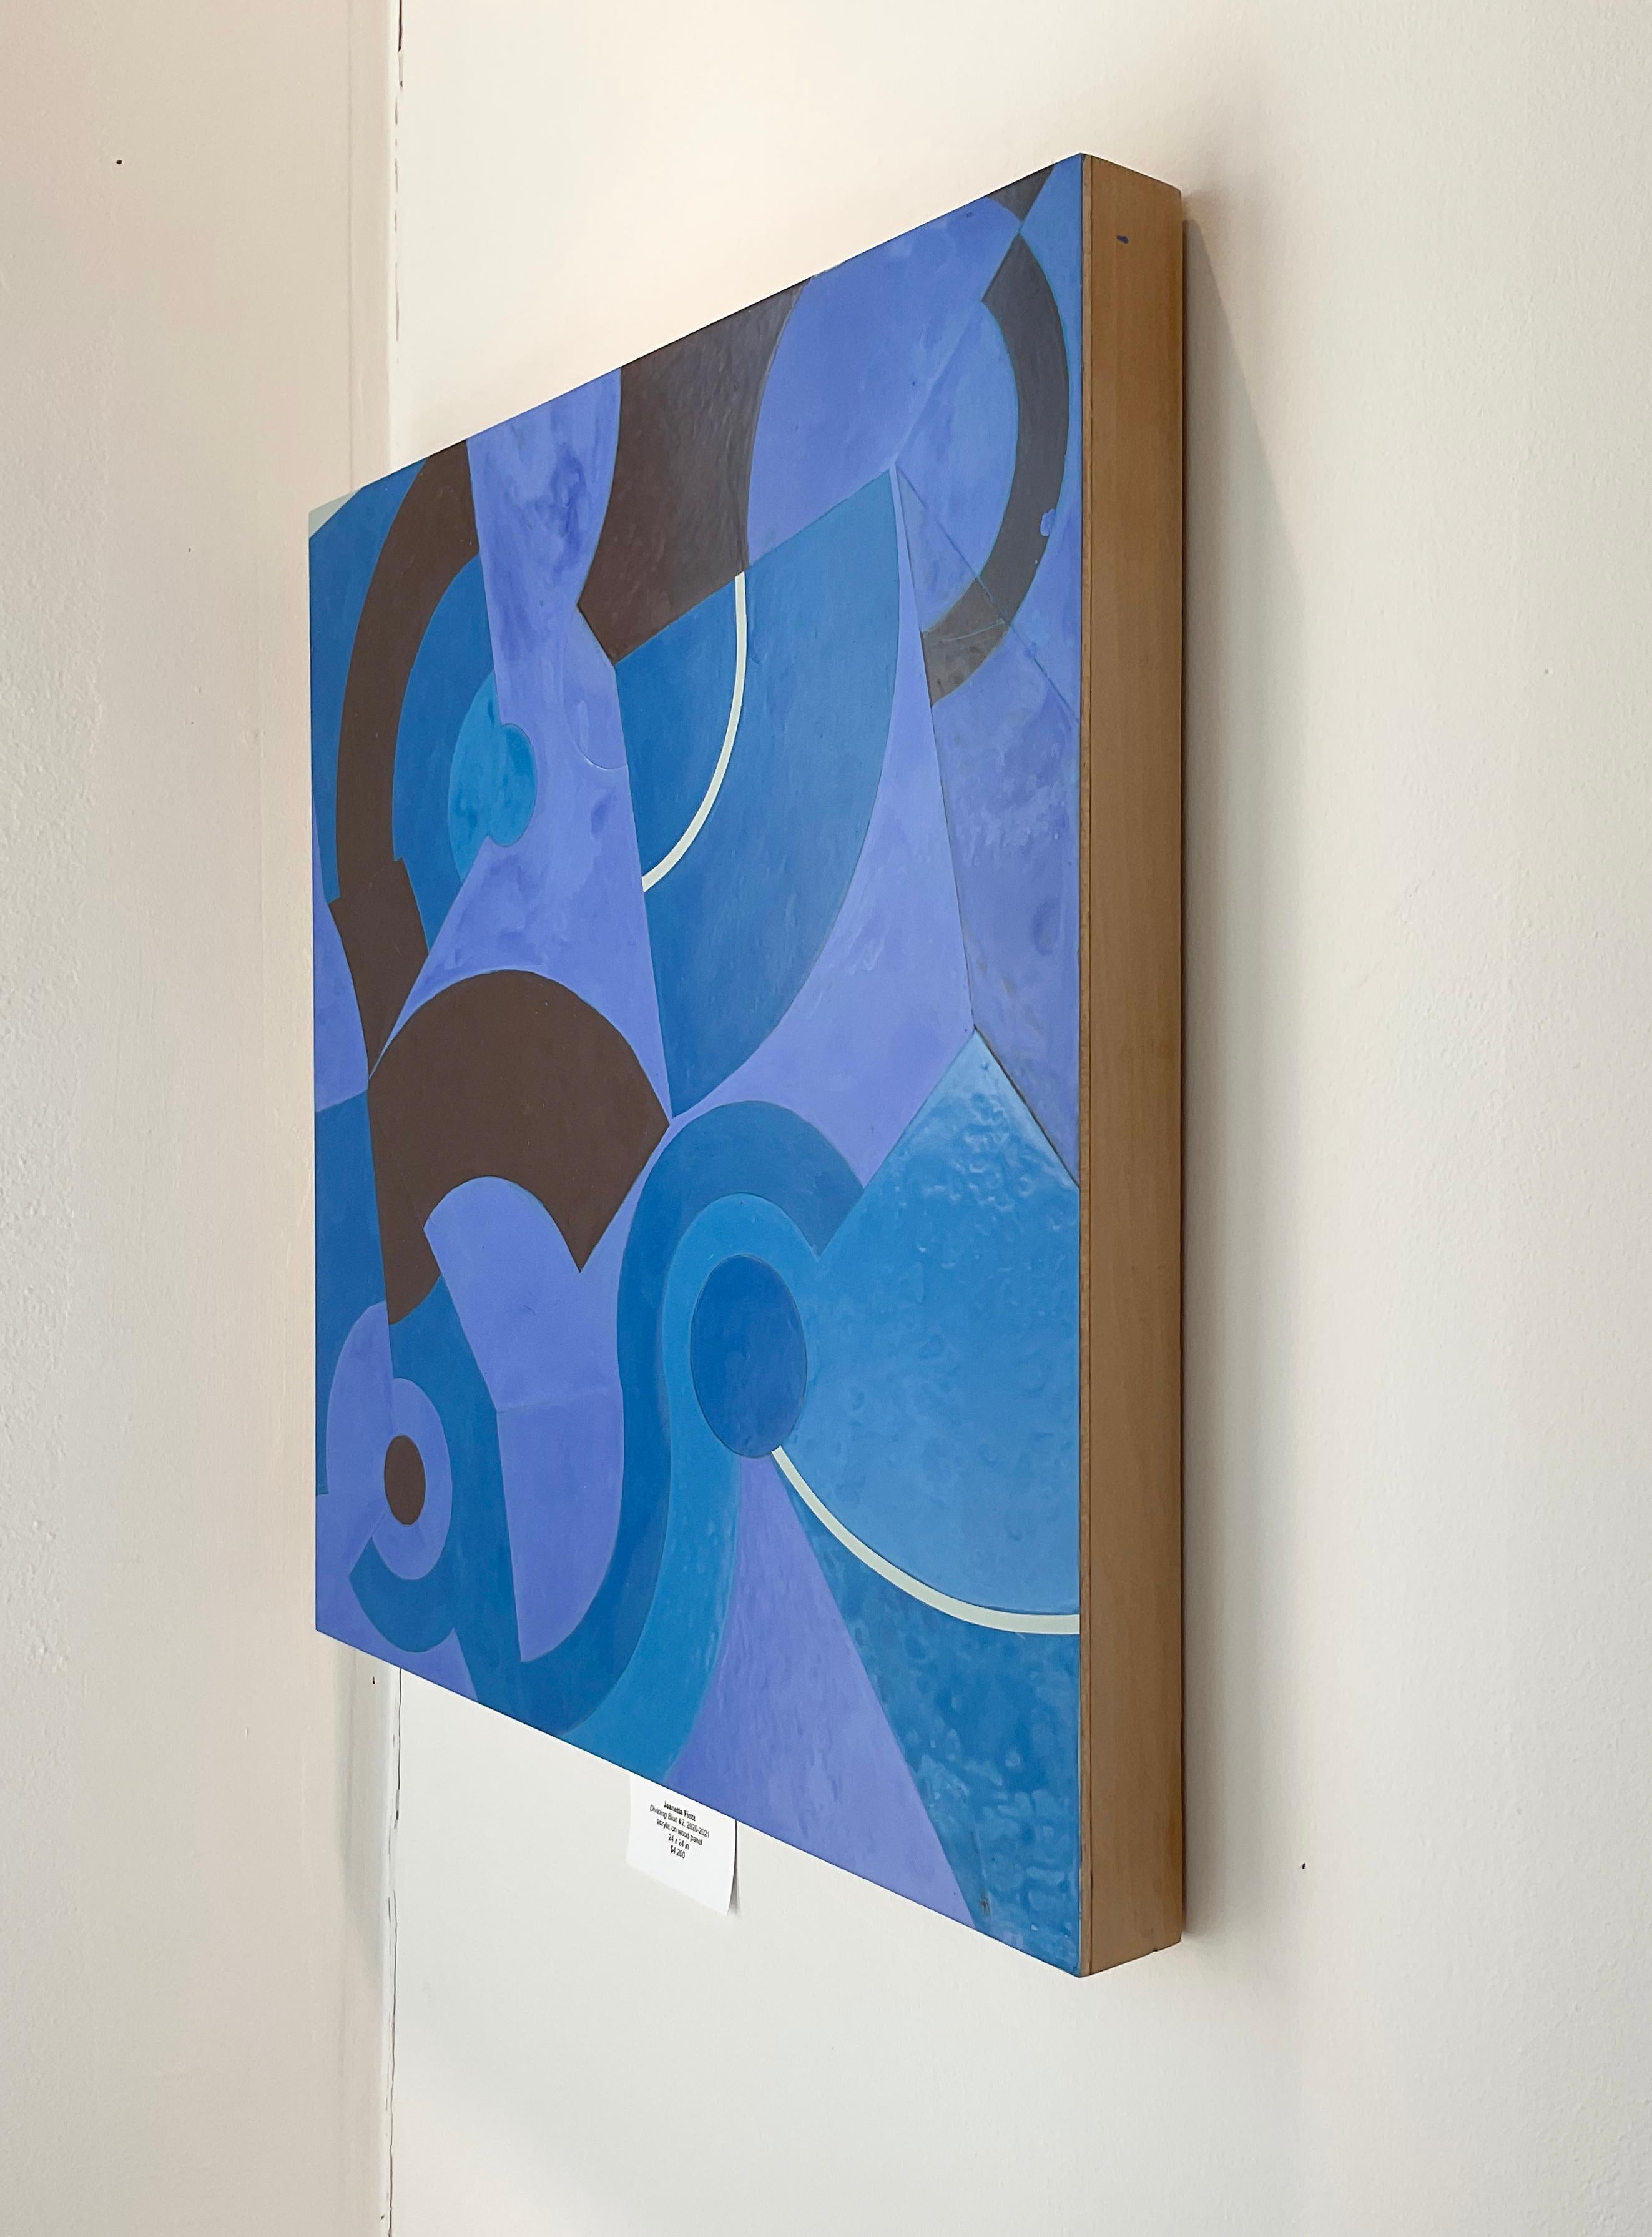 Divining Blue #2 (peinture abstraite géométrique en bleu et noir) - Painting de Jeanette Fintz